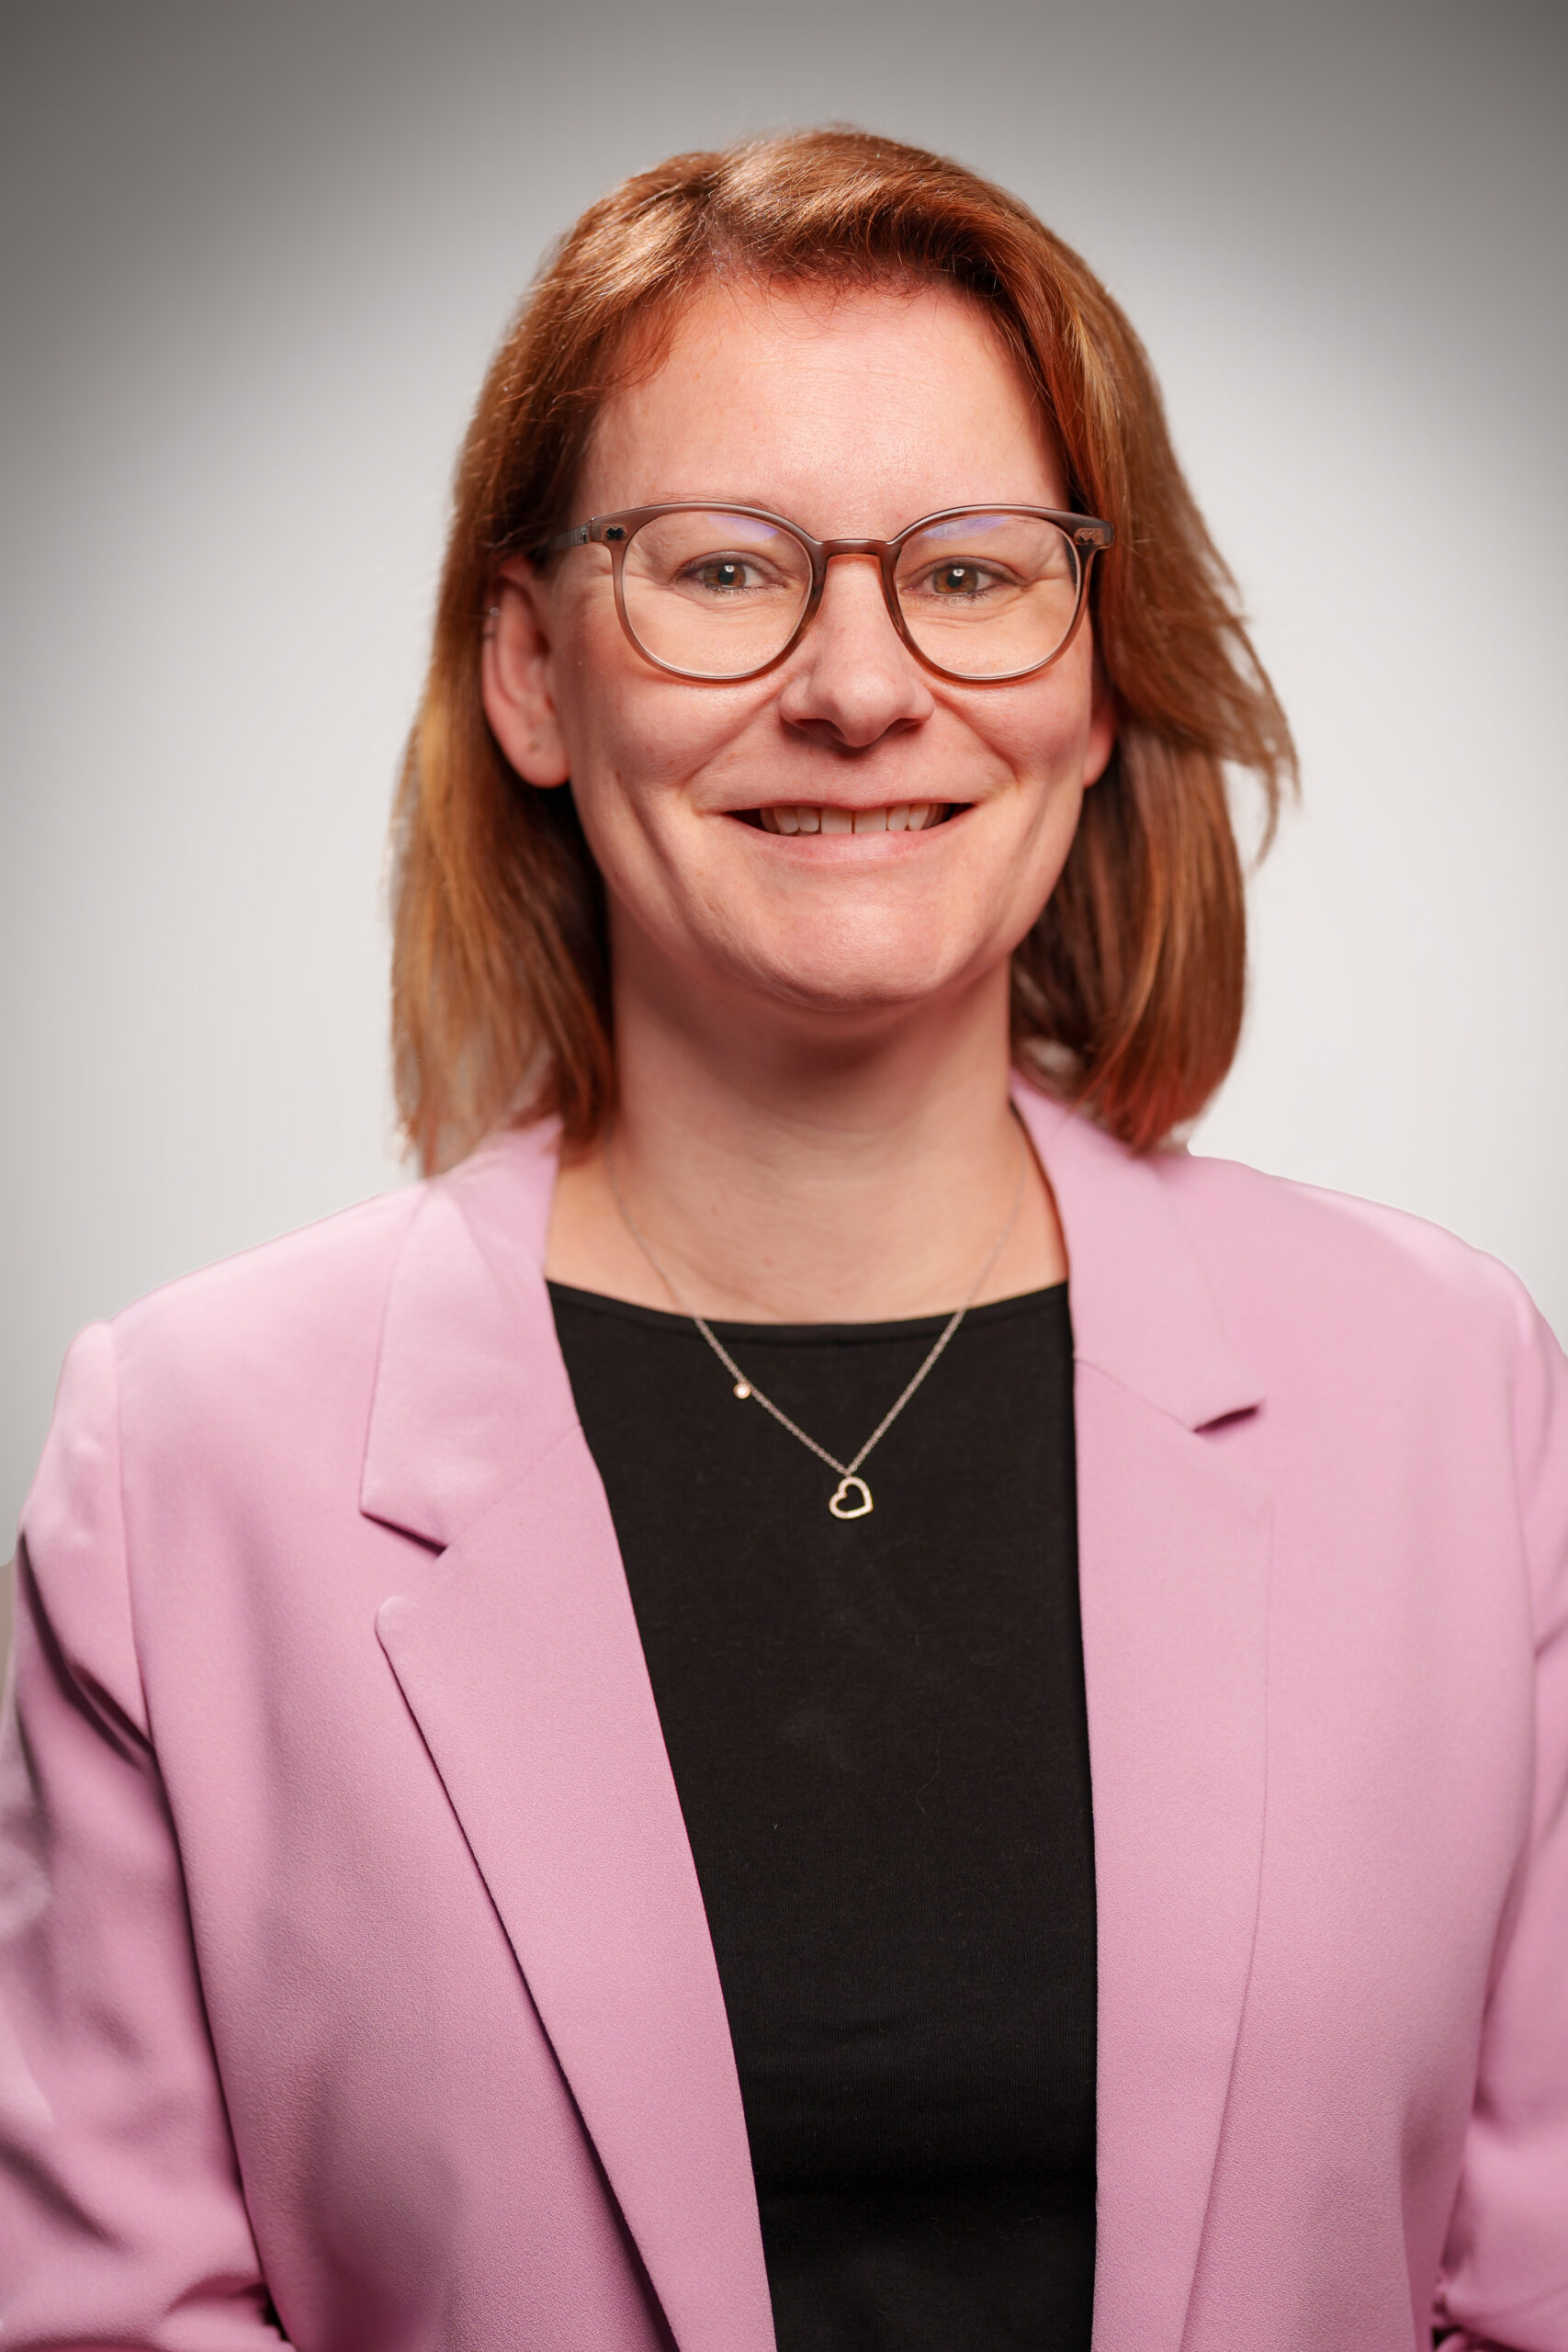 Dies ist ein Portraitbild von Dr. Aukje van Loon. Sie hat schulterlanges hellbraunes Haar und trägt eine farblich passende Brille. Ihr Blazer ist rosa, die Bluse darunter schwarz.